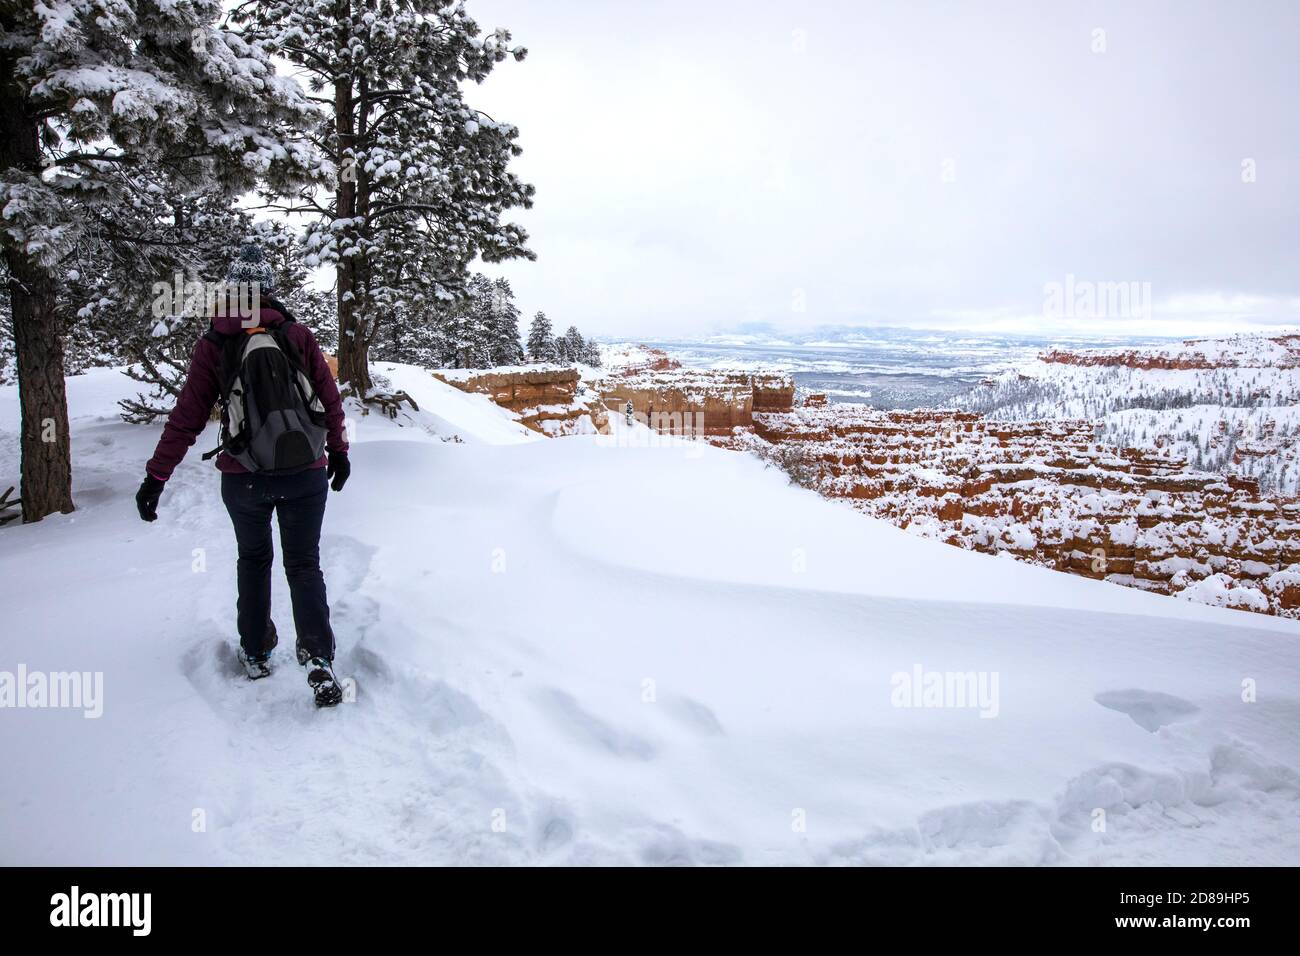 Vue arrière d'une femme qui fait de la randonnée dans la neige, parc national de Bryce Canyon, Utah, États-Unis Banque D'Images